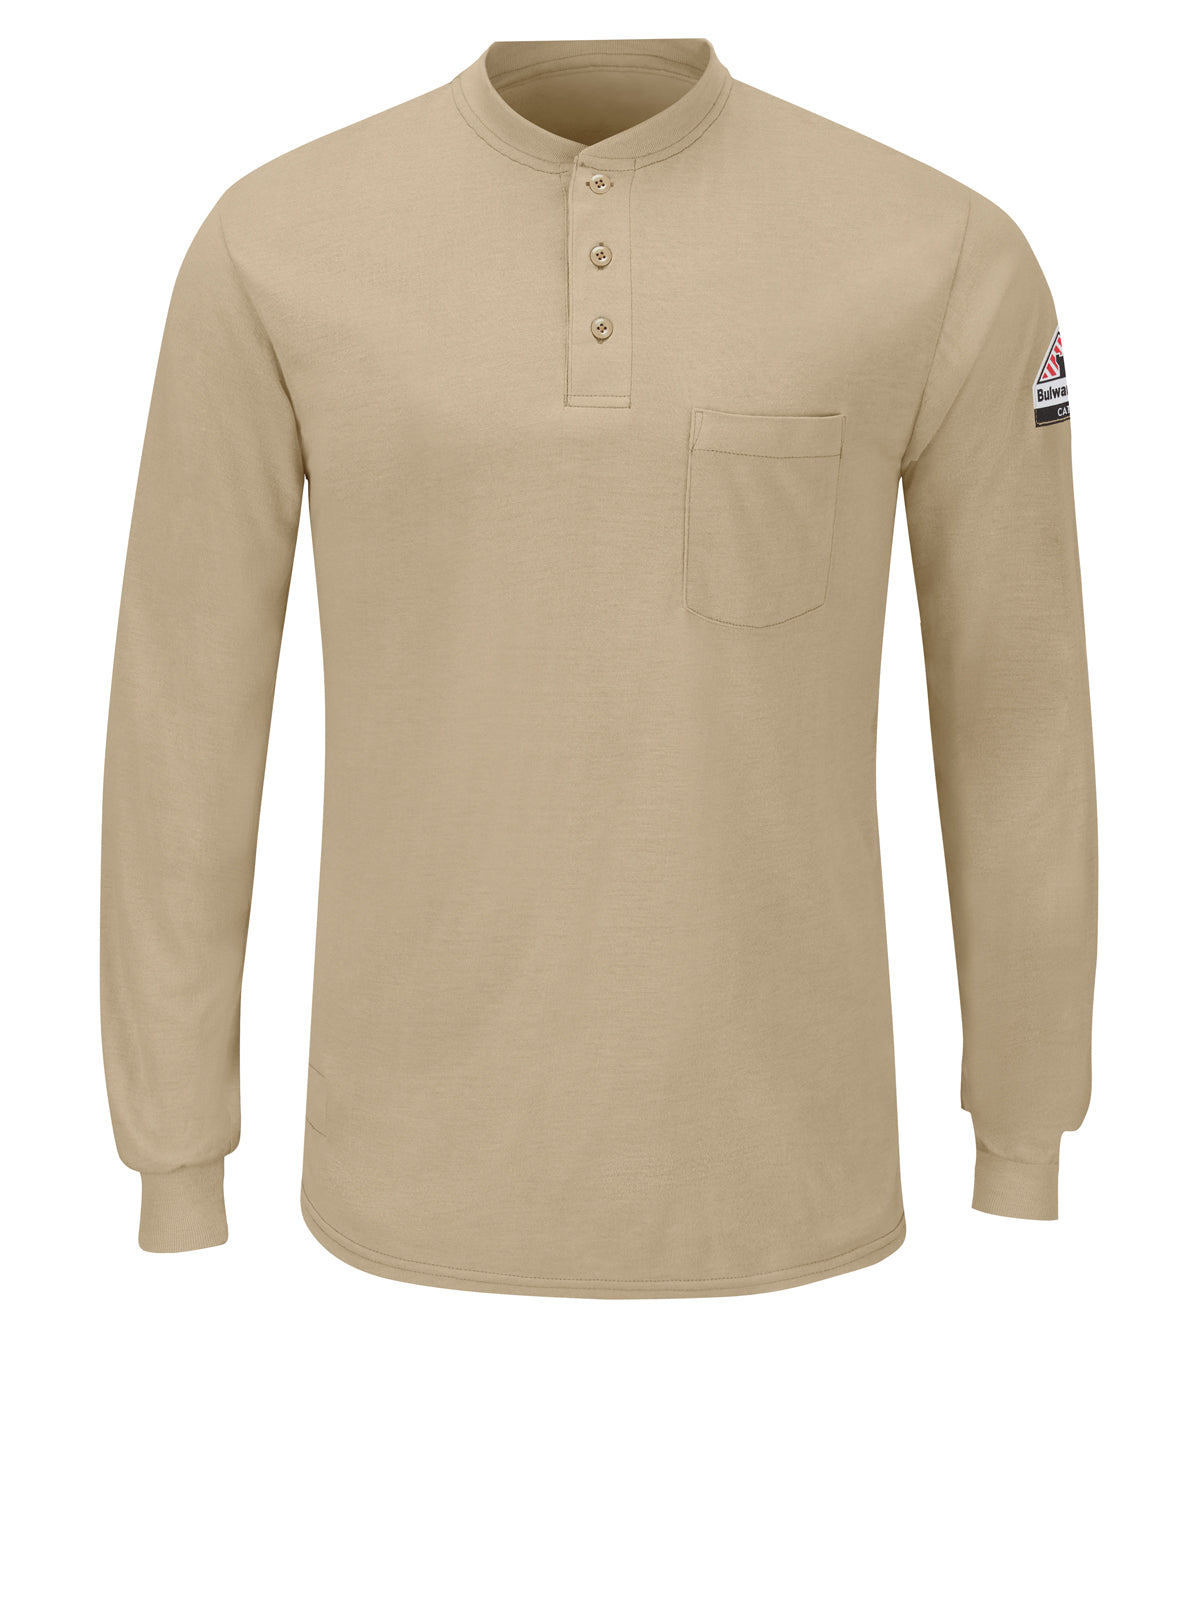 Men's Long Sleeve Lightweight Henley Shirt - SML8 - Khaki